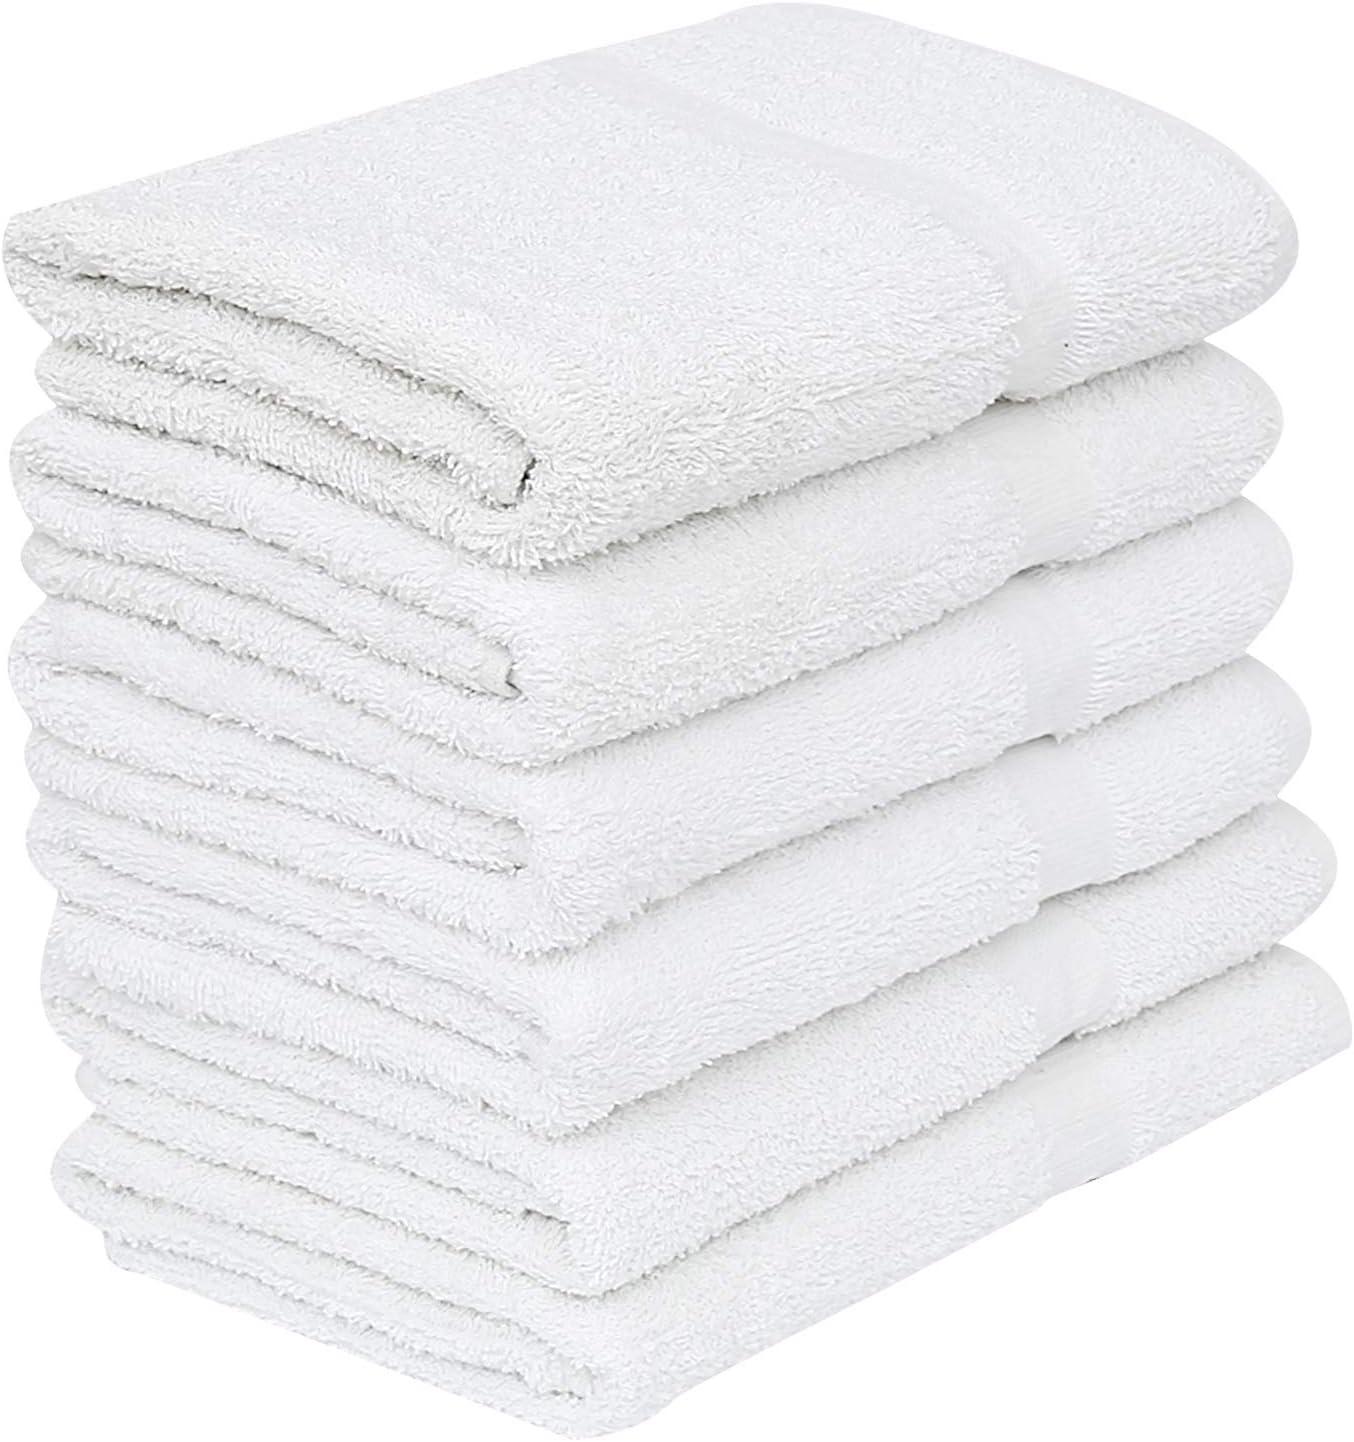 Wholesale 20x40 Bath Towels | White Towels Bulk